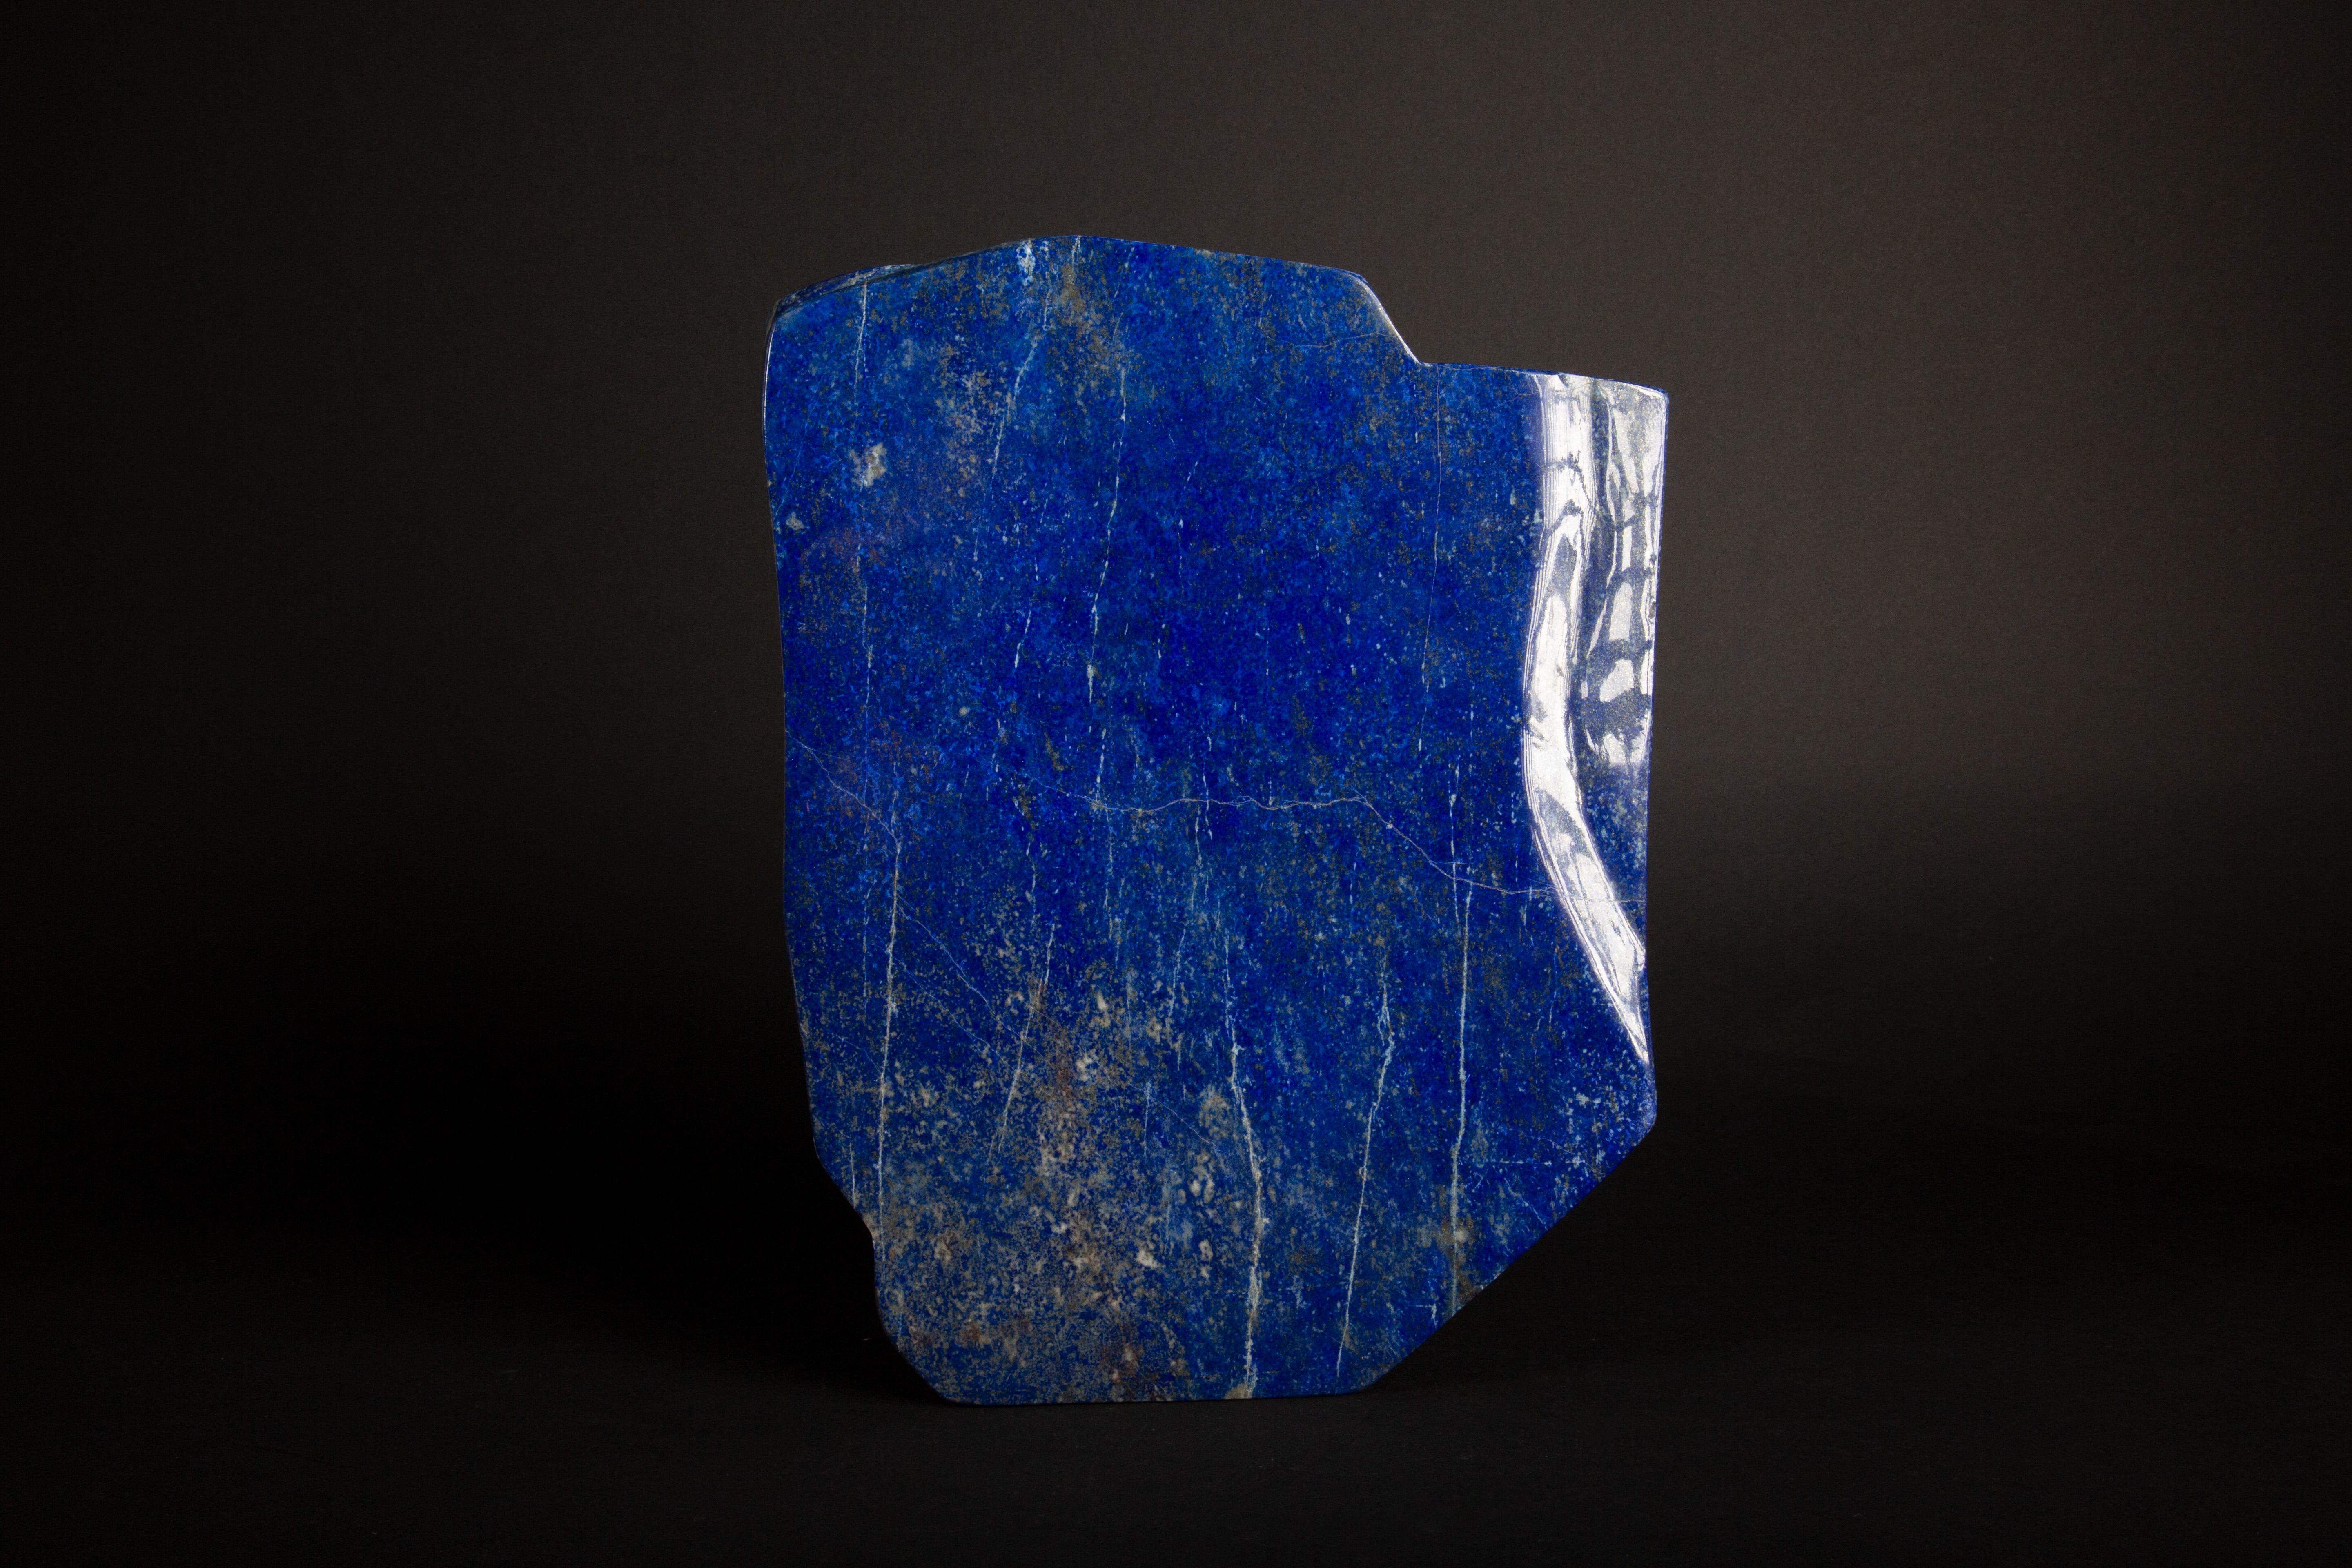 This Lapis Lazuli Specimen, measuring 2